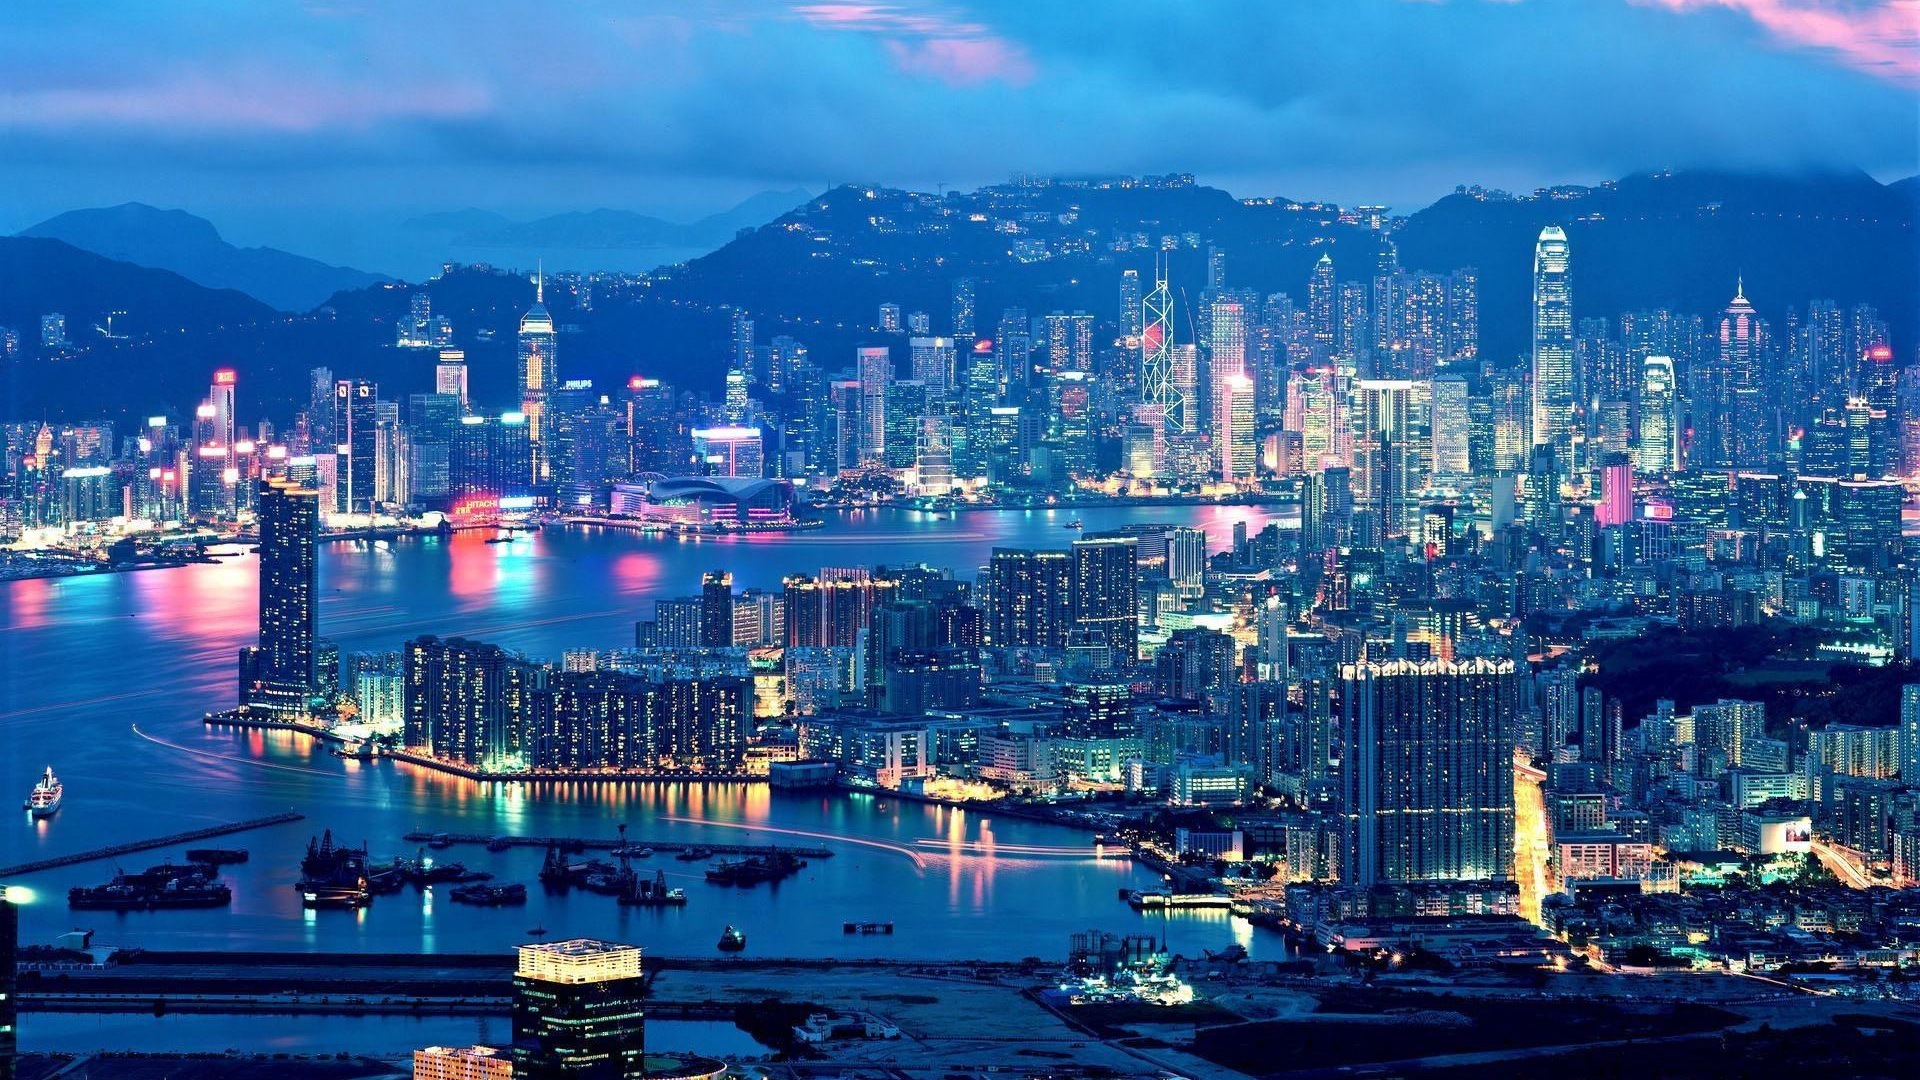 【携程攻略】香港天际100香港观景台景点,登上香港著名的室内观景台天际100鸟瞰全港，不仅壮观的楼景尽收眼底…